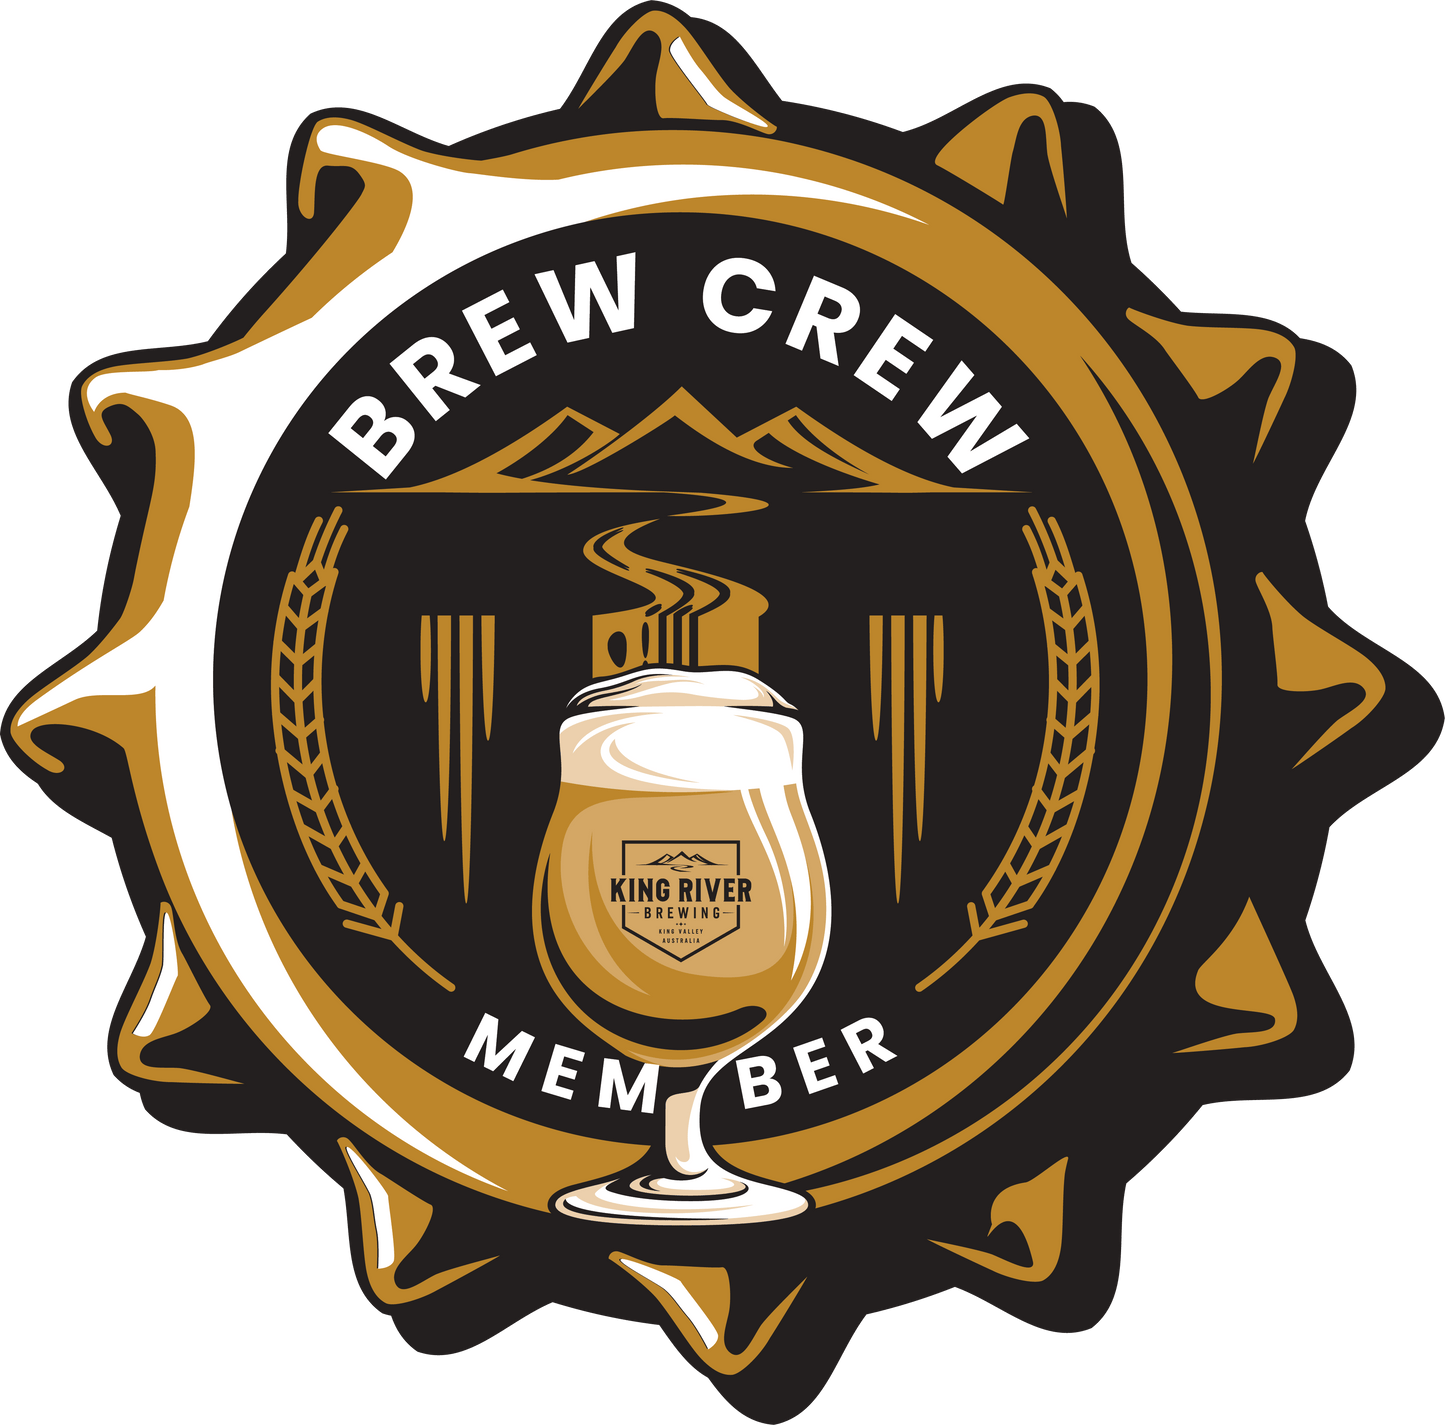 King River Brew Crew Membership